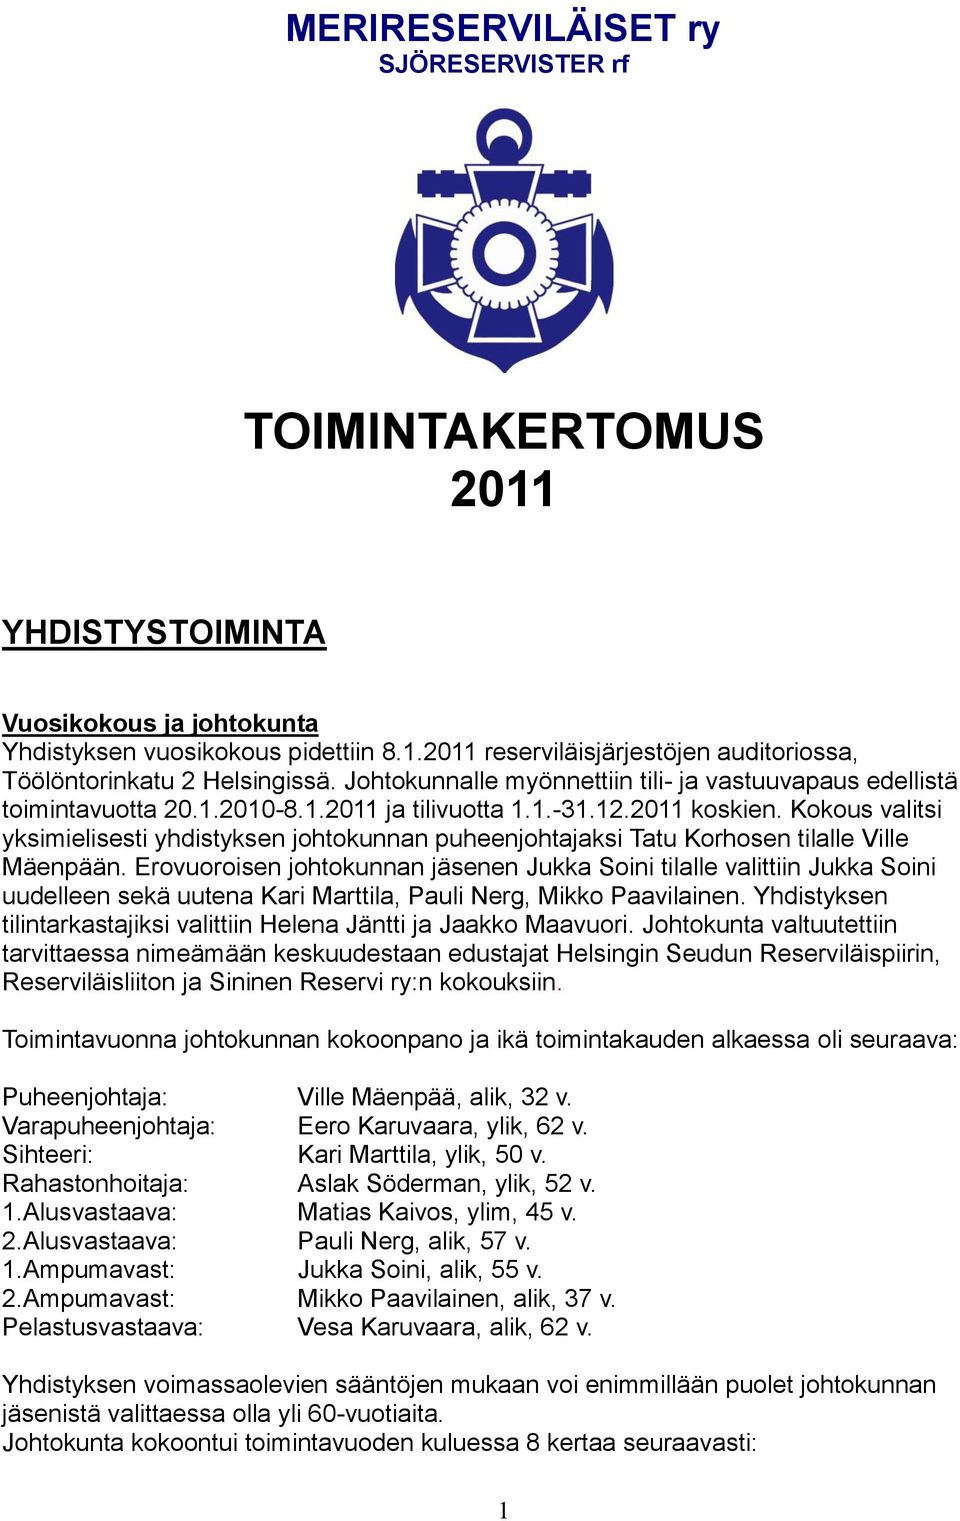 Kokous valitsi yksimielisesti yhdistyksen johtokunnan puheenjohtajaksi Tatu Korhosen tilalle Ville Mäenpään.